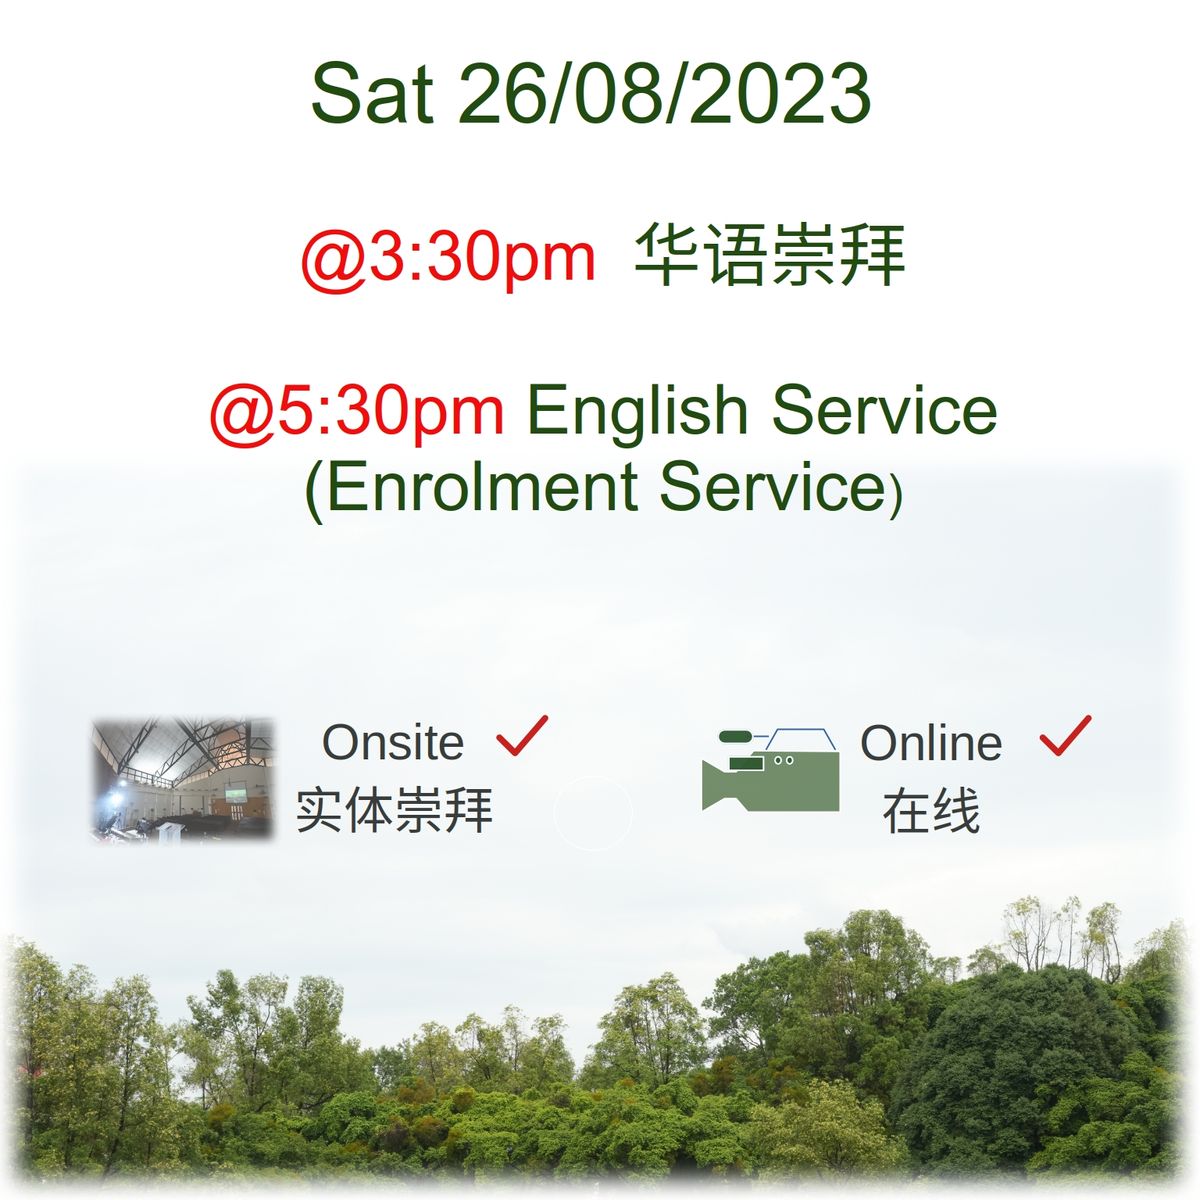 Sat 26/08/2023 Worship Service 崇拜聚会.